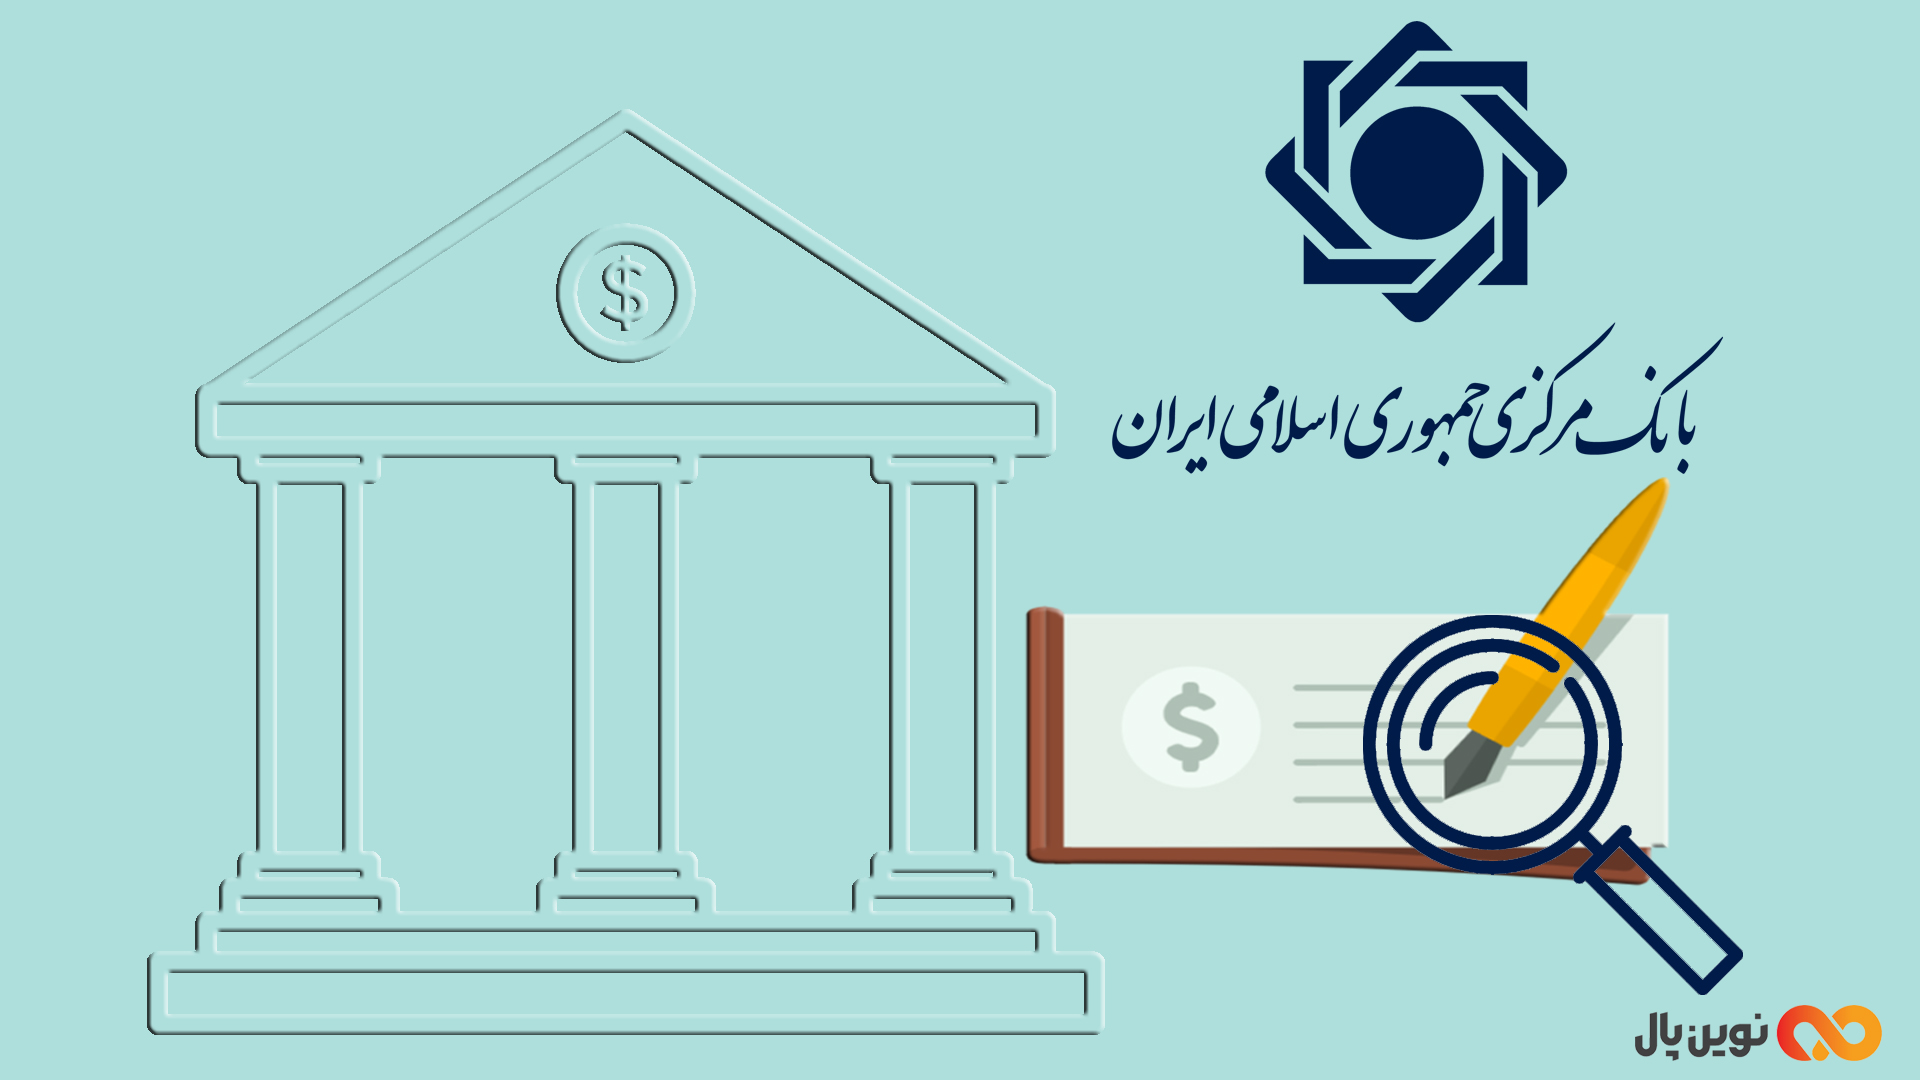 سامانه پیچک بانک مرکزی چیست؟